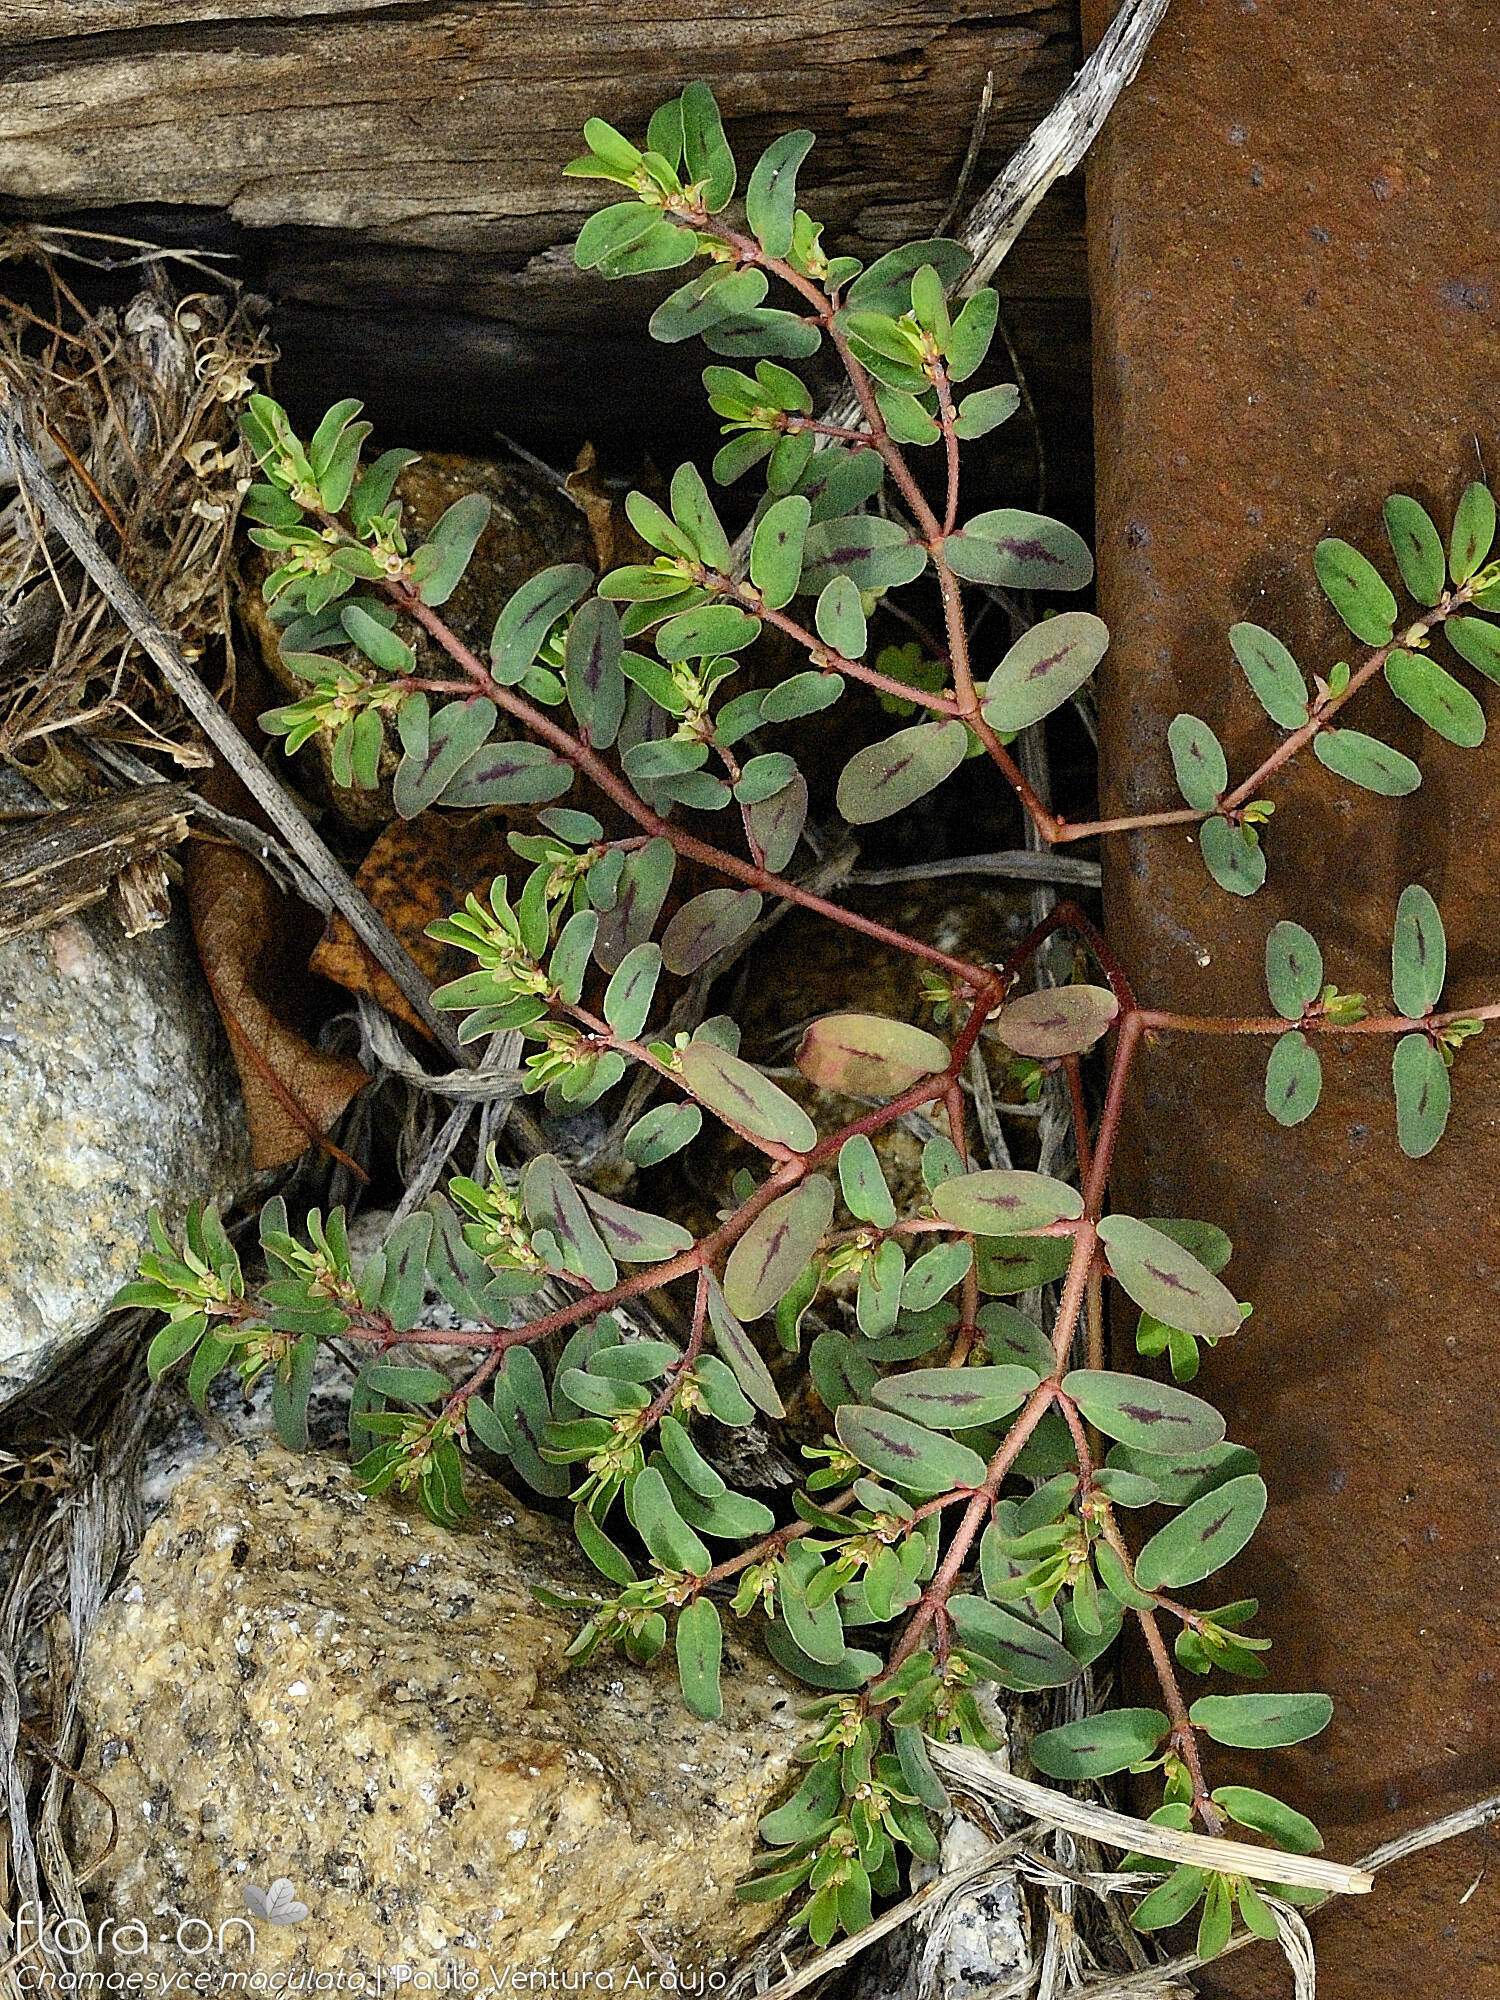 Chamaesyce maculata - Hábito | Paulo Ventura Araújo; CC BY-NC 4.0